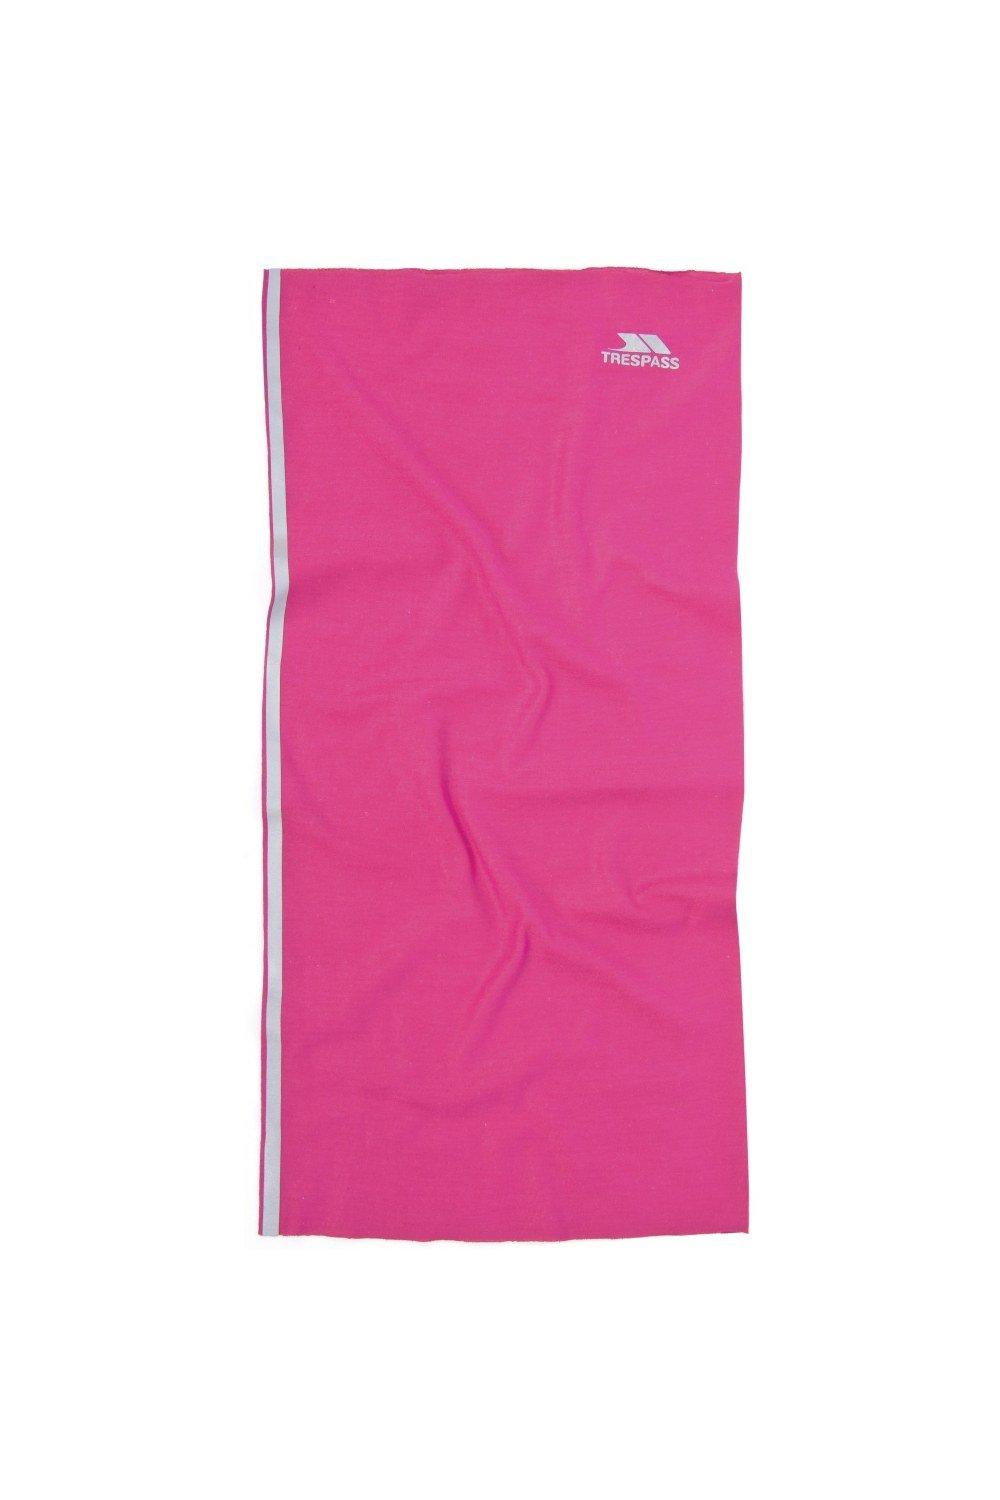 цена Многофункциональный шейный шарф Tattler Trespass, розовый